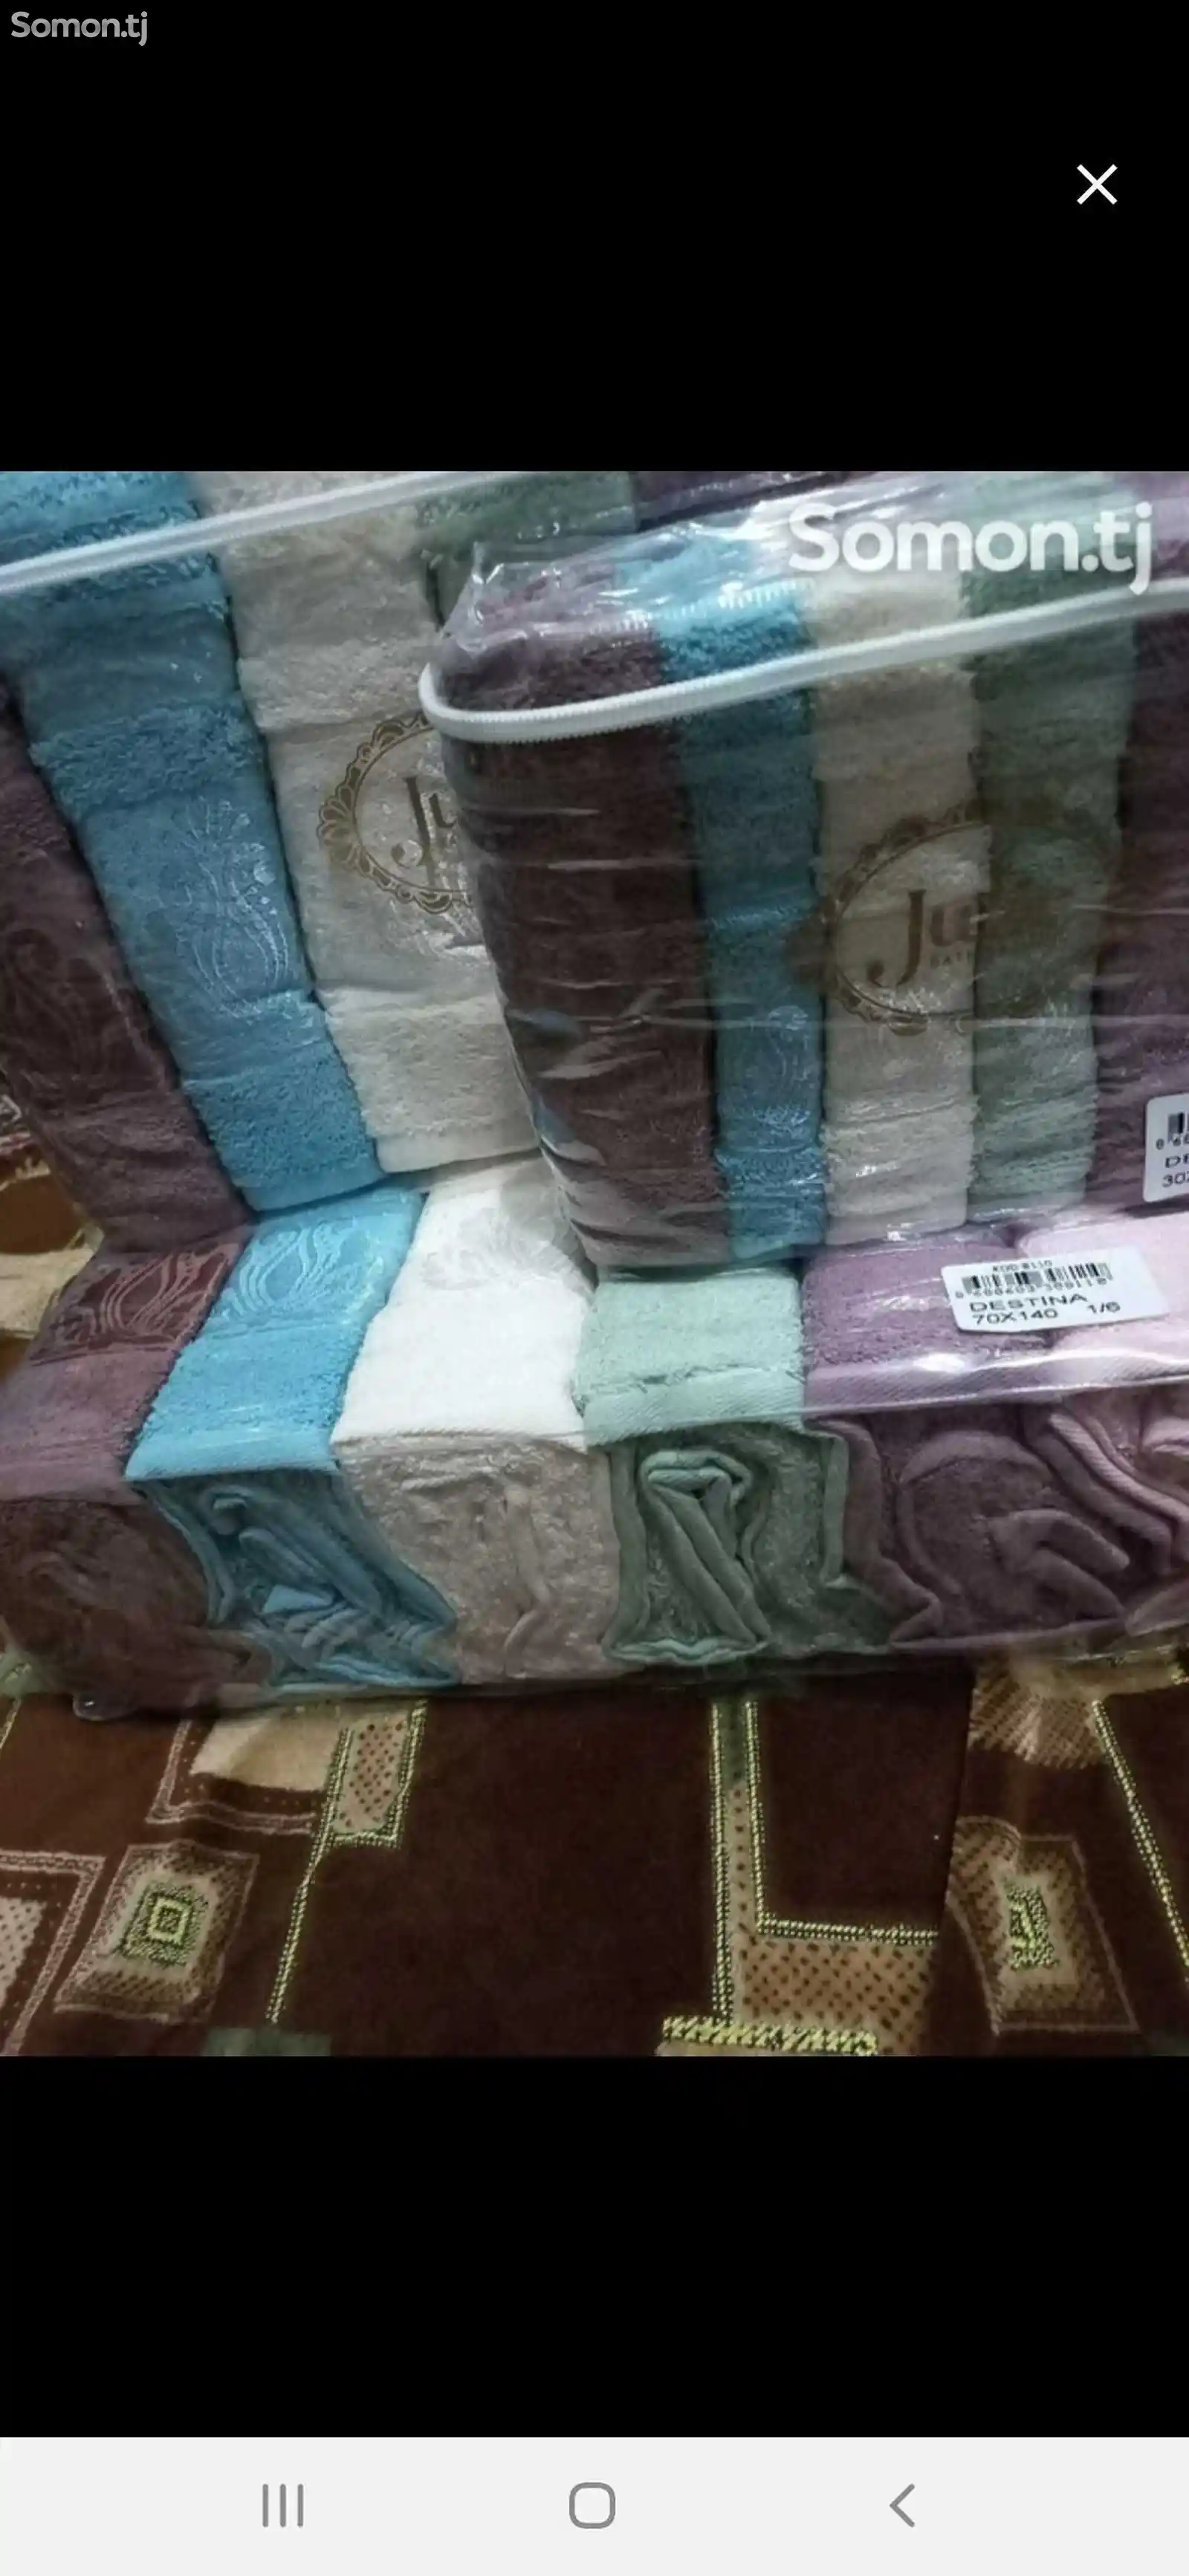 Комплект полотенец